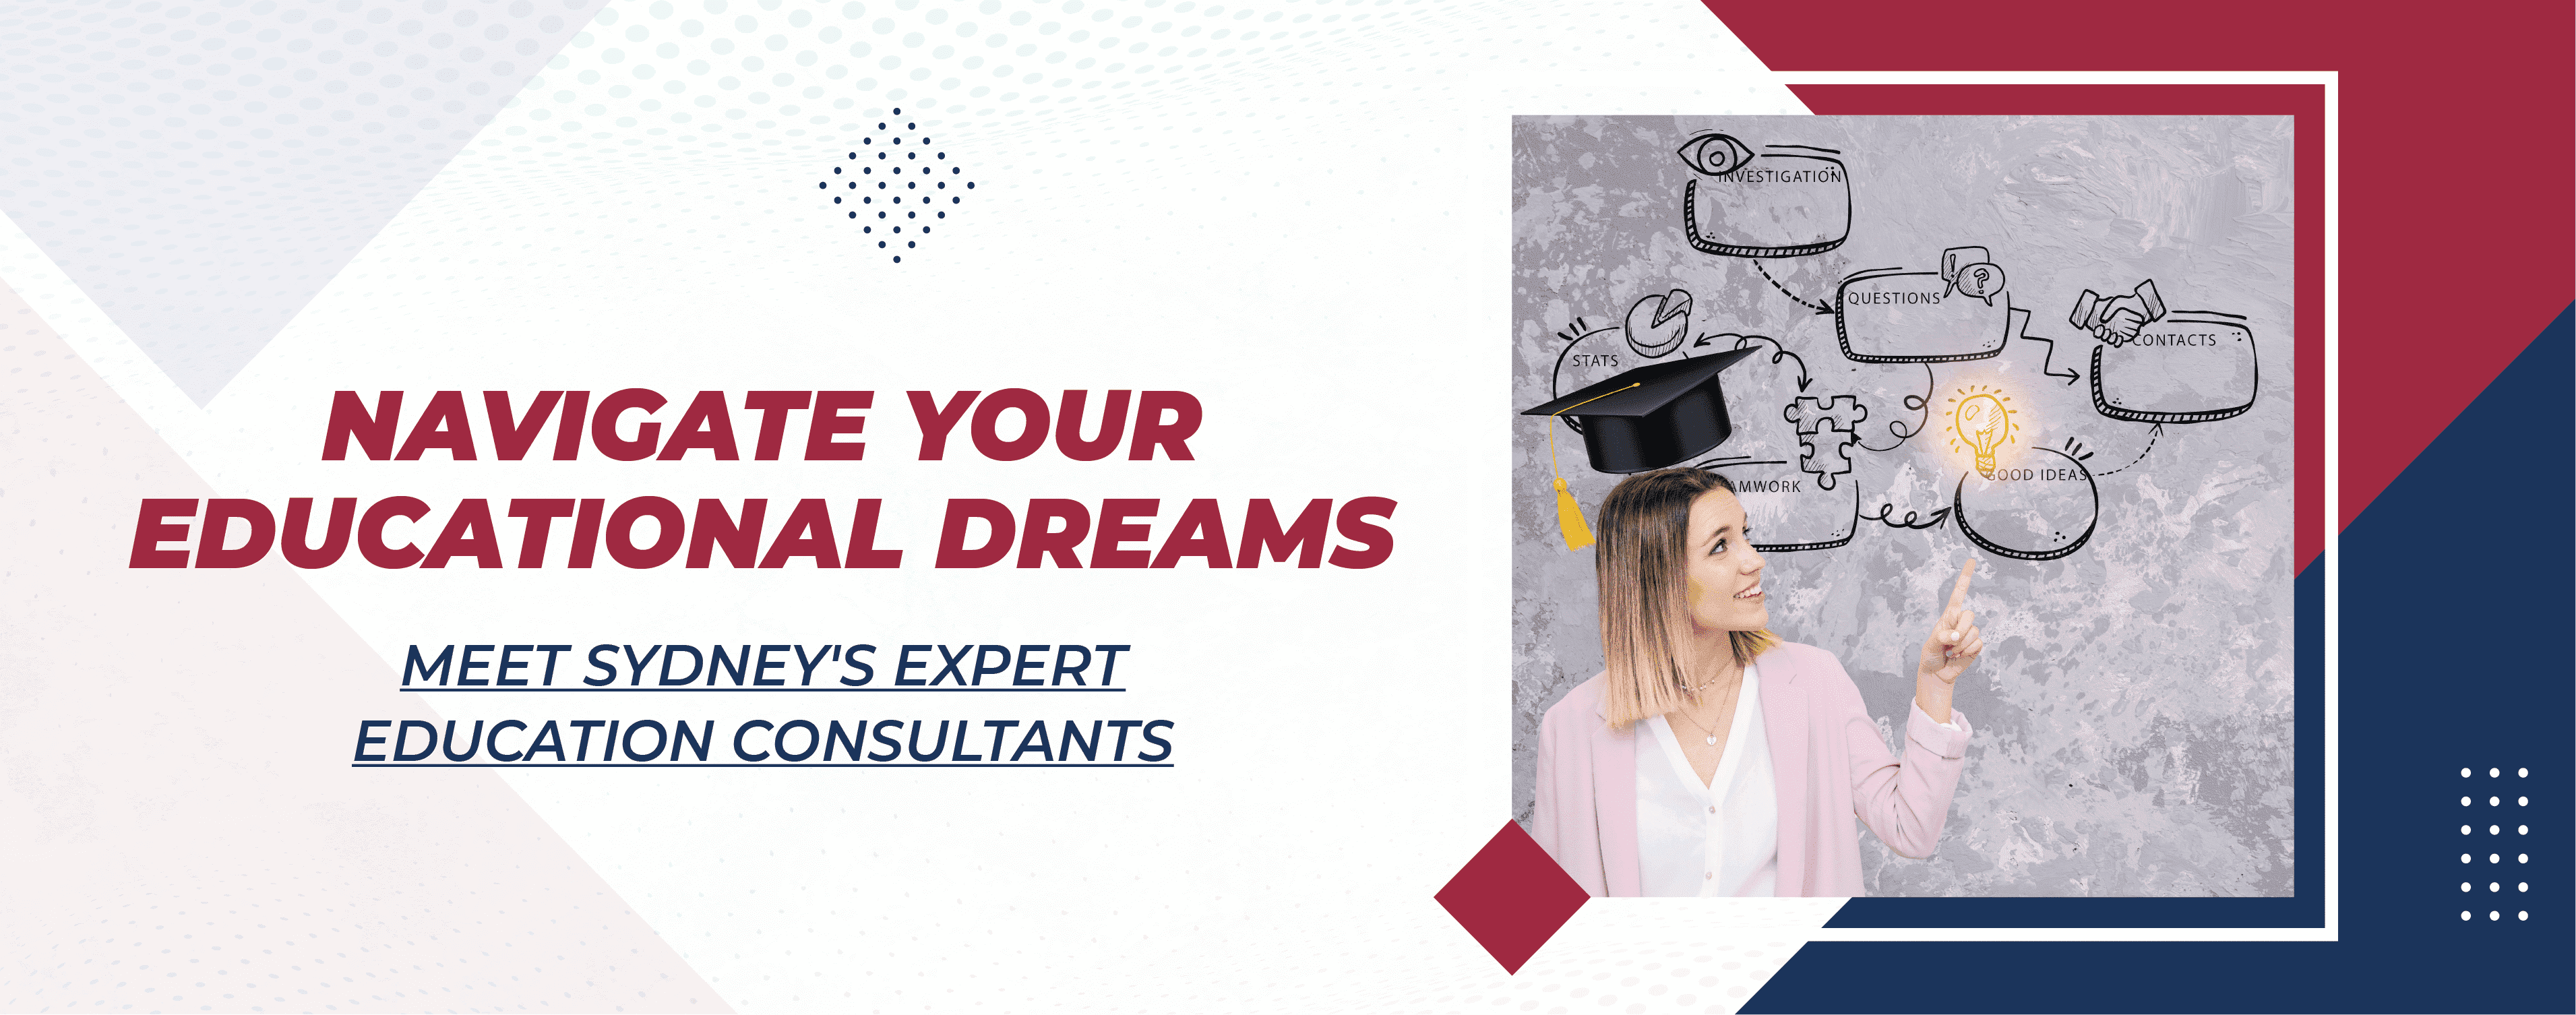 Sydney’s Expert Education Consultants: Achieve Your Dreams